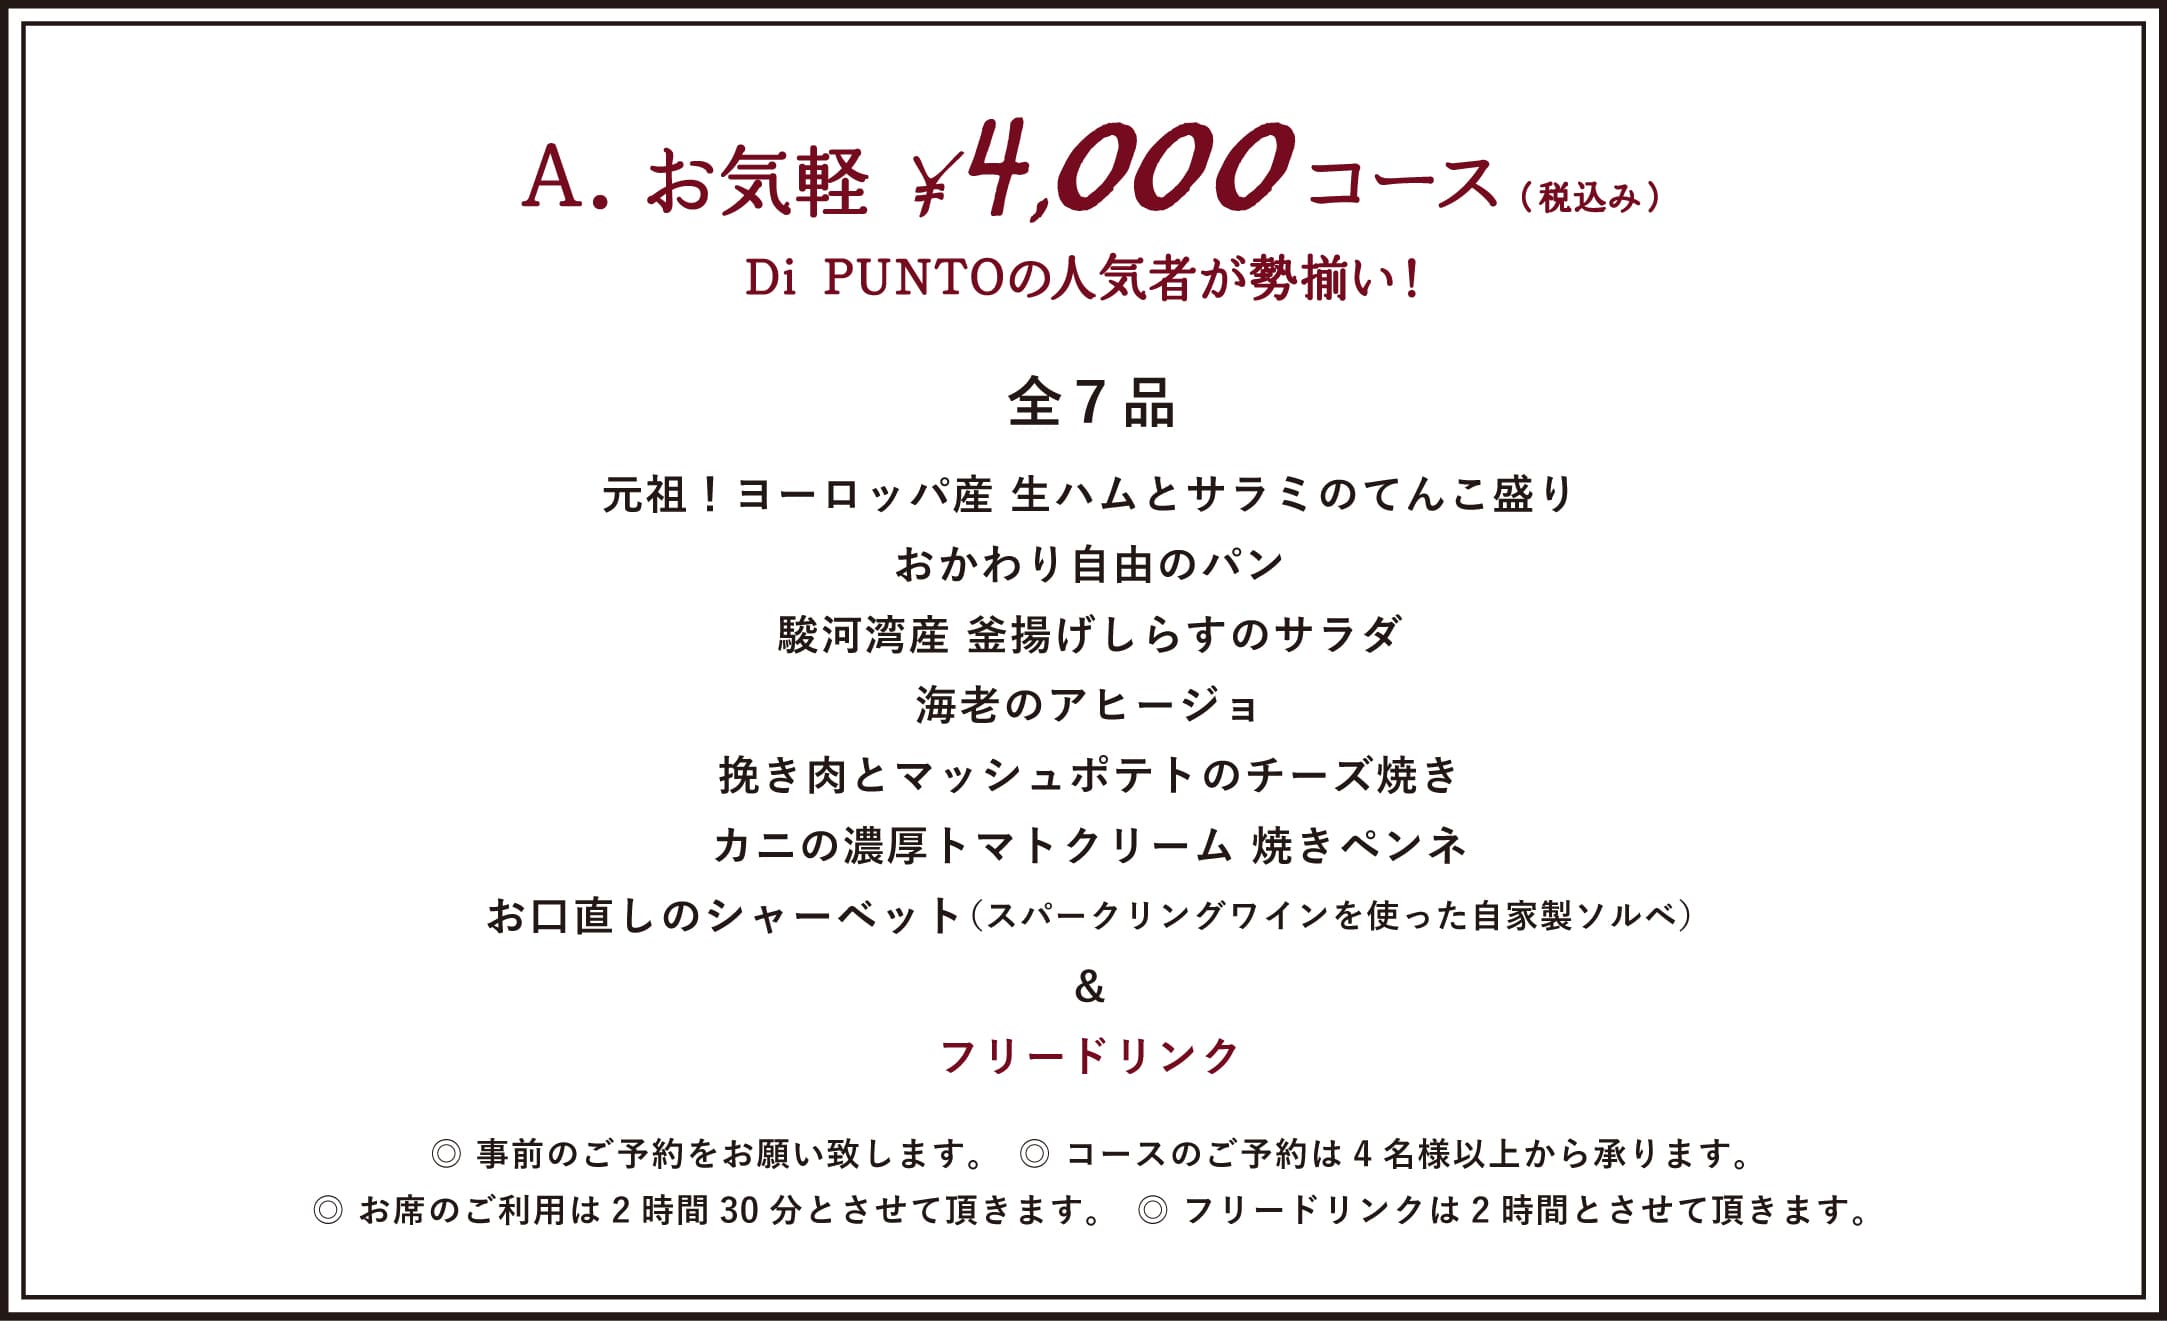 ¥4,000 COURSE